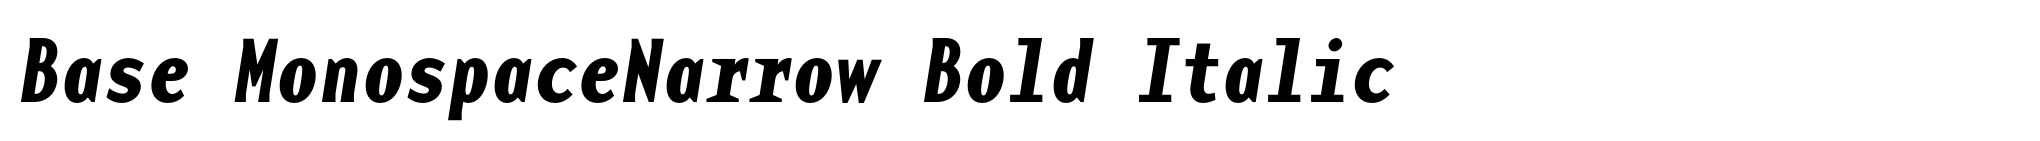 Base MonospaceNarrow Bold Italic image